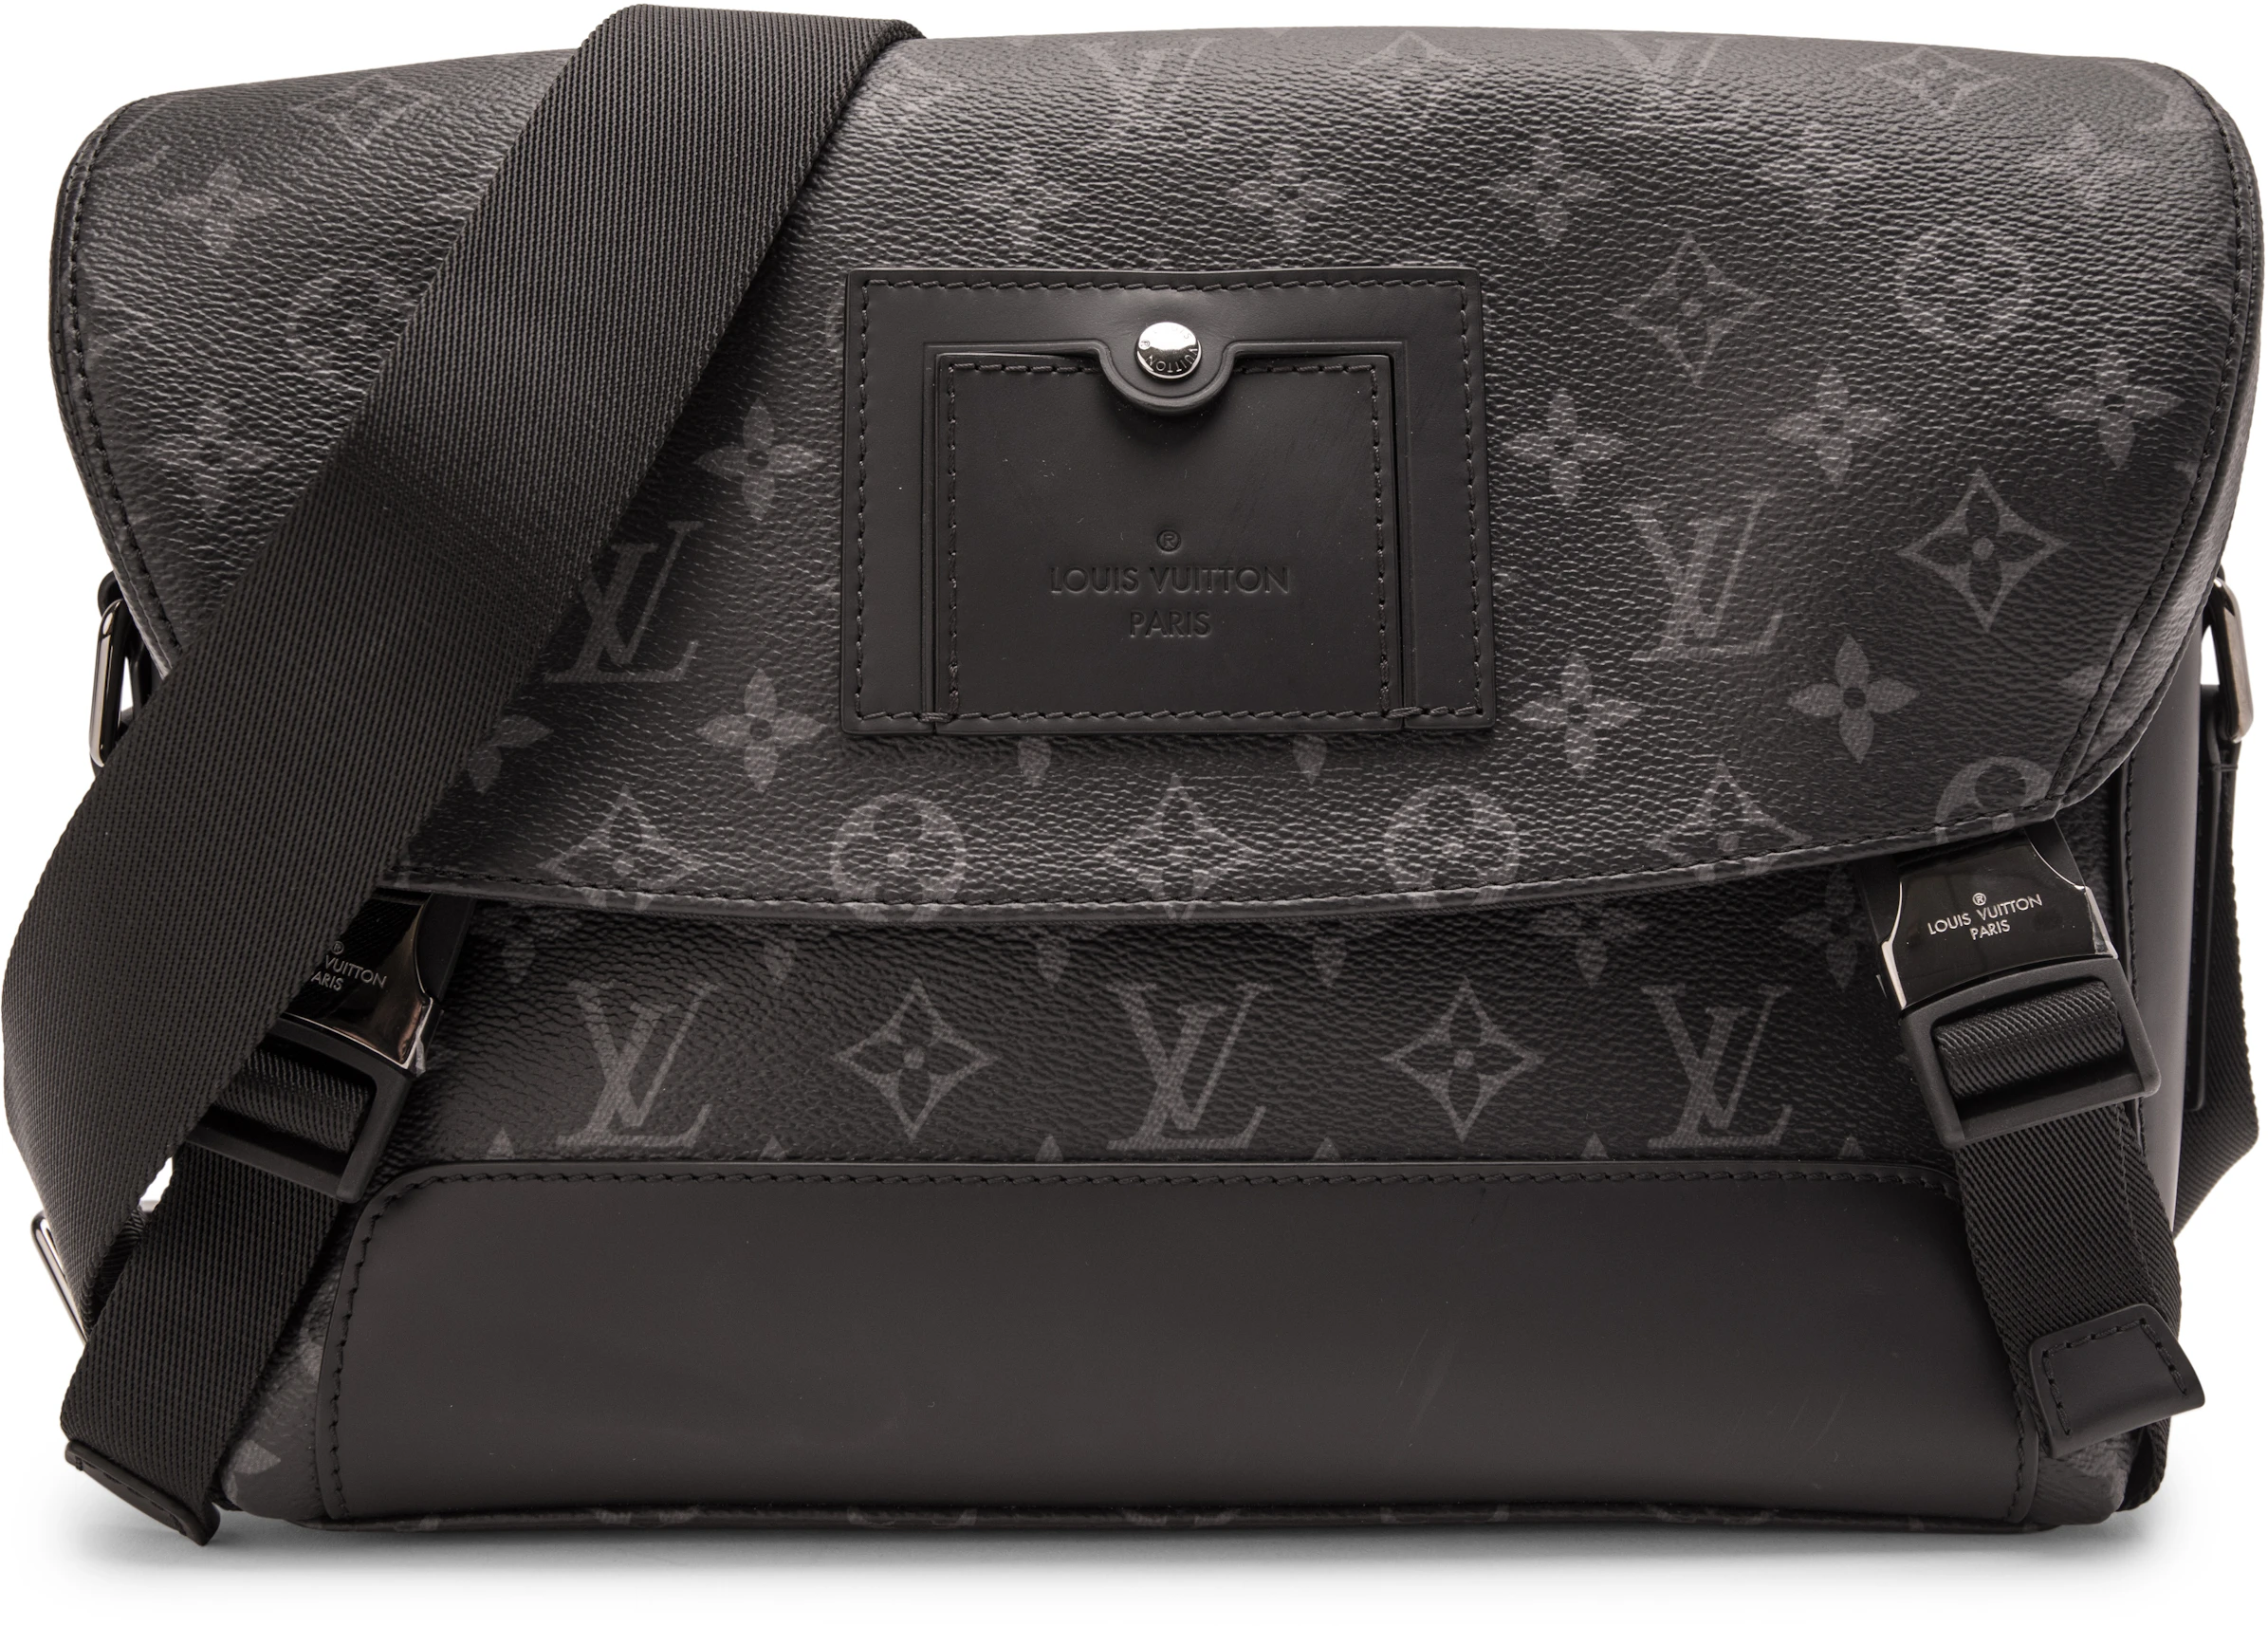 Shop Louis Vuitton Messenger Pm Voyager (M40511) by Sincerity_m639